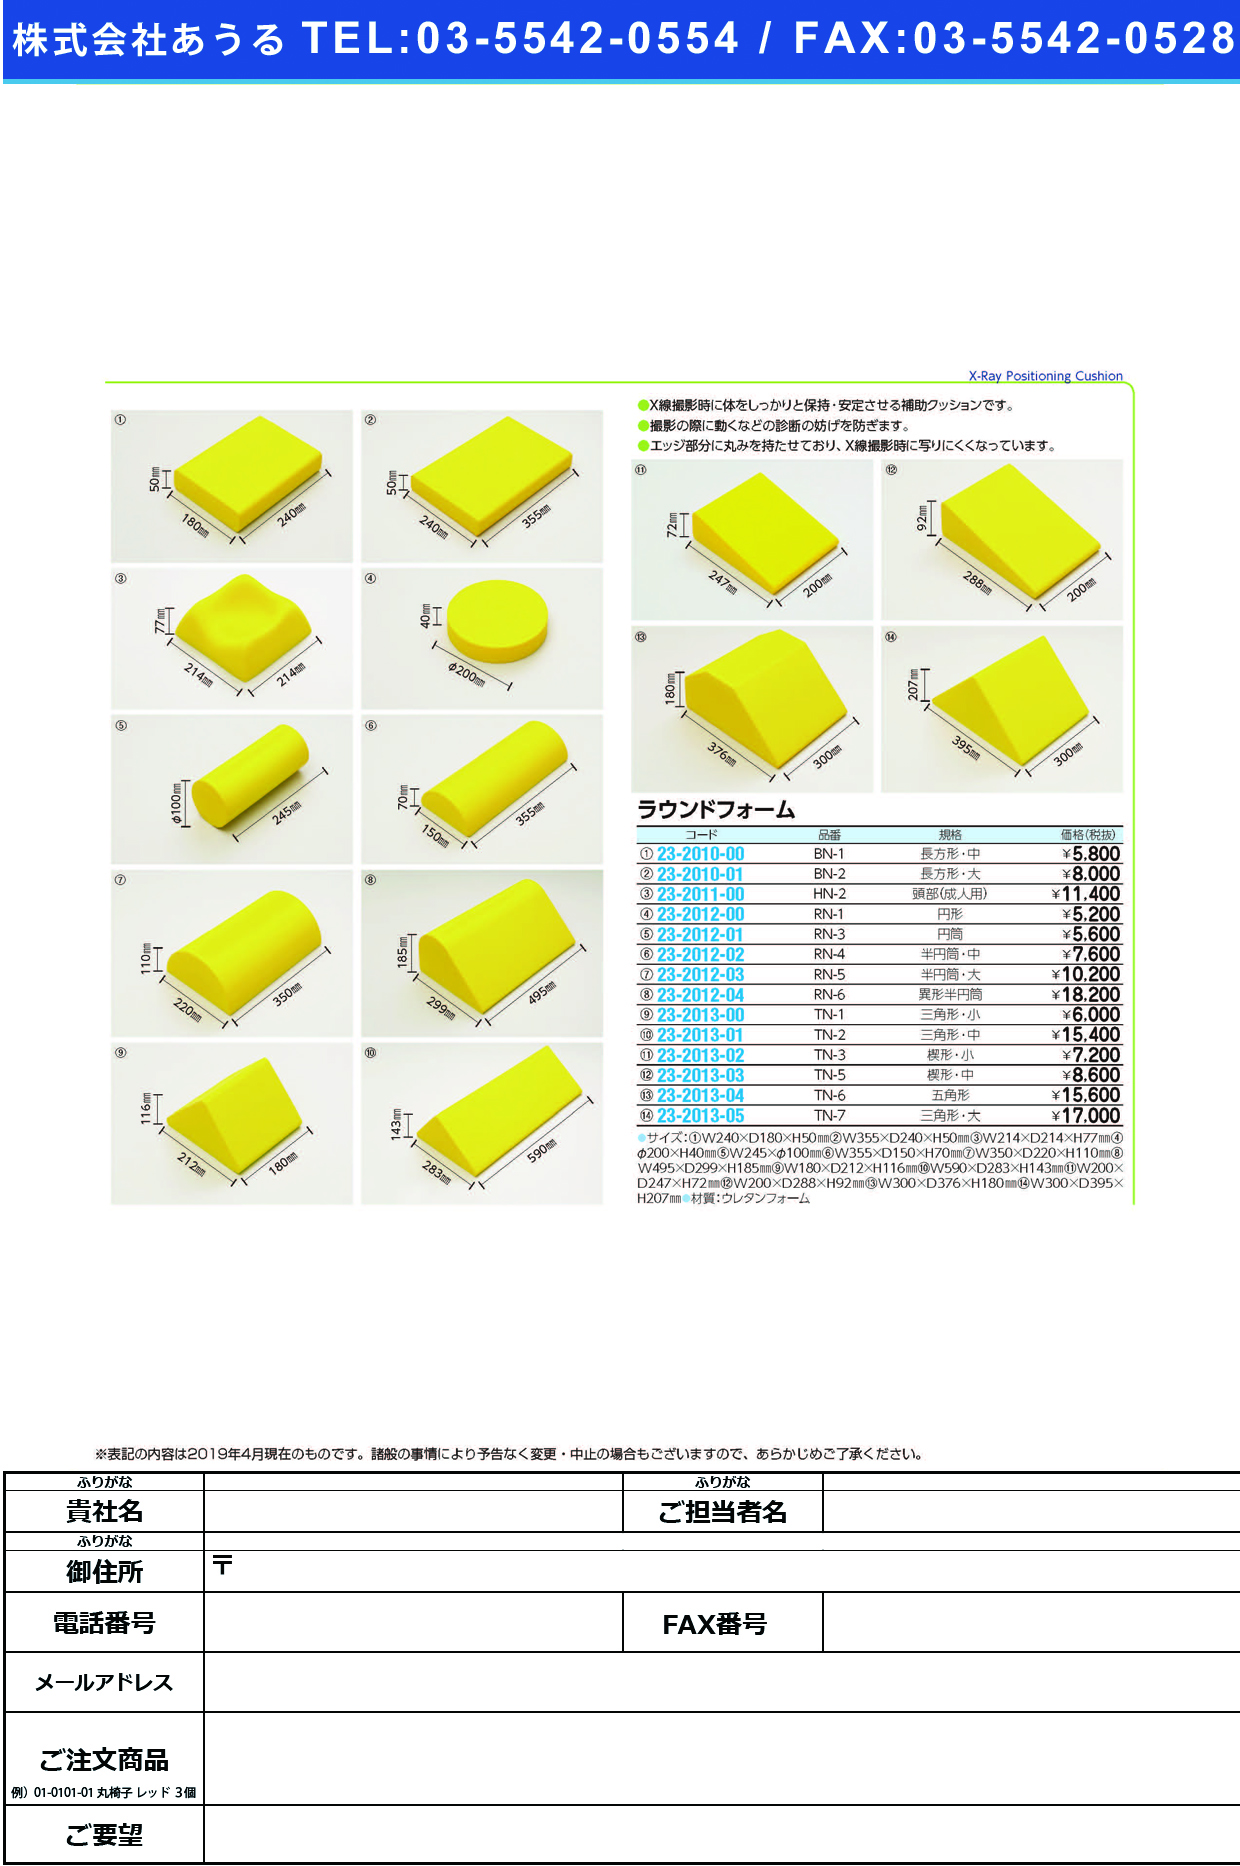 (23-2013-00)ラウンドフォーム（三角形・小） TN-1 ﾗｳﾝﾄﾞﾌｫｰﾑ(ｻﾝｶｸｹｲ･ｼｮｳ【1個単位】【2019年カタログ商品】